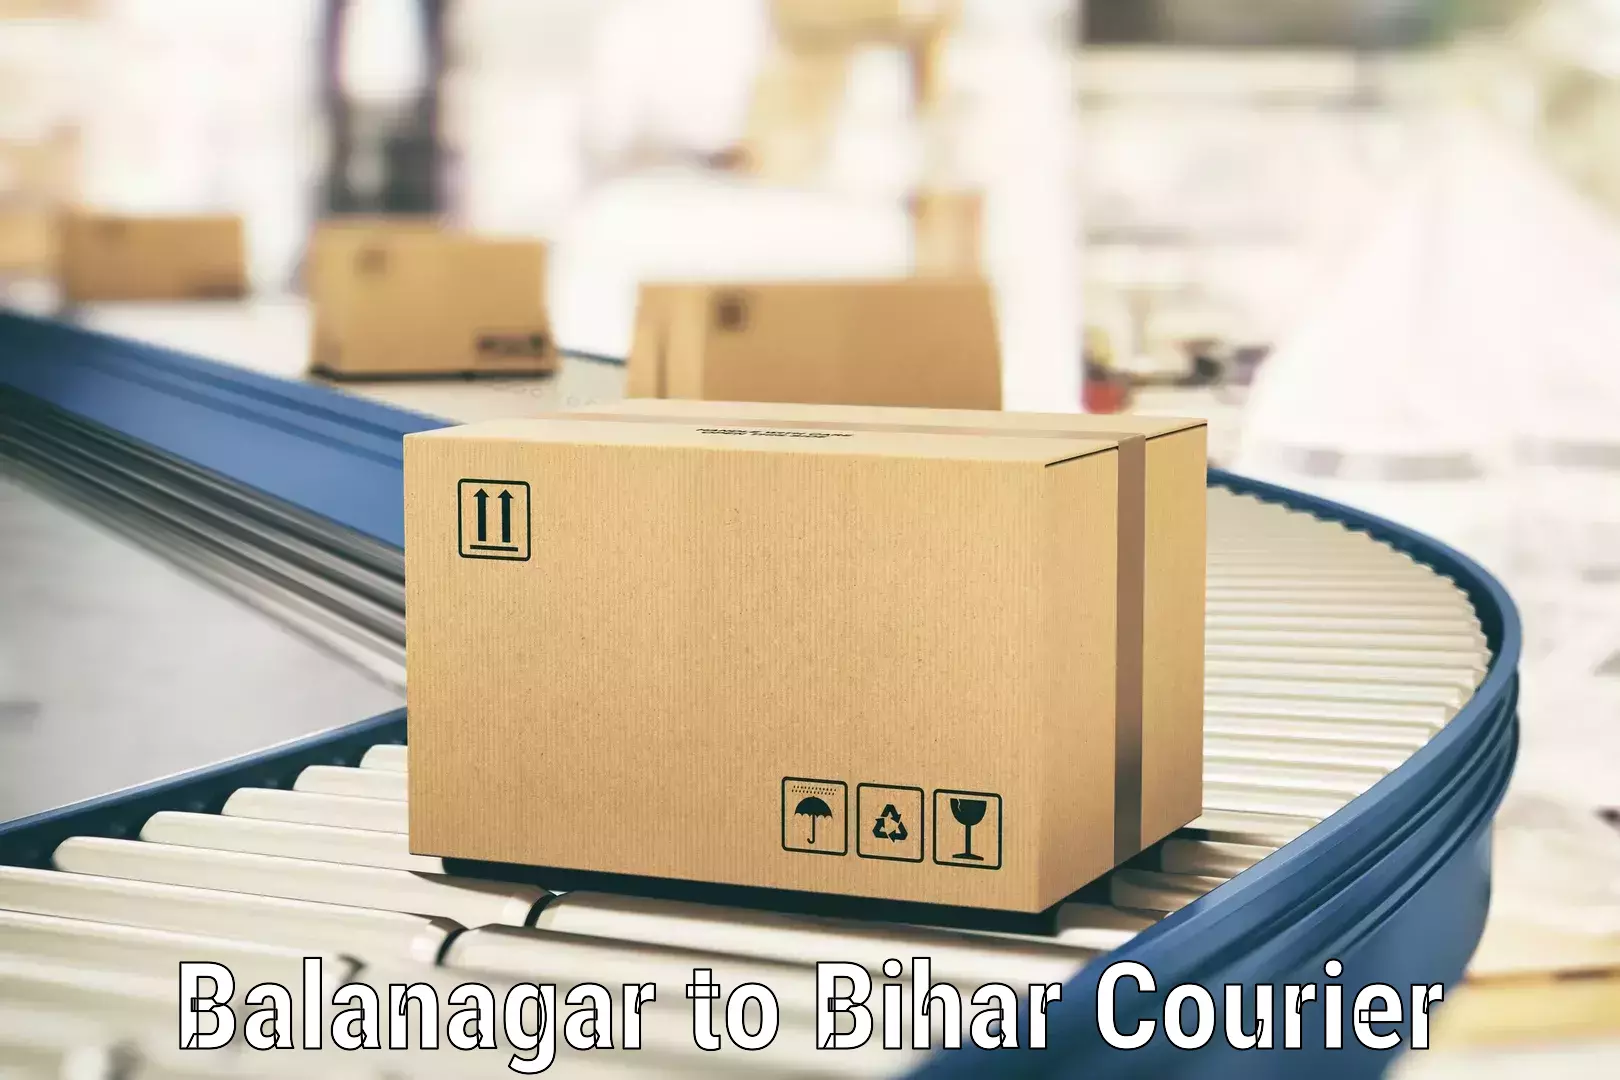 Logistics solutions Balanagar to Bihar